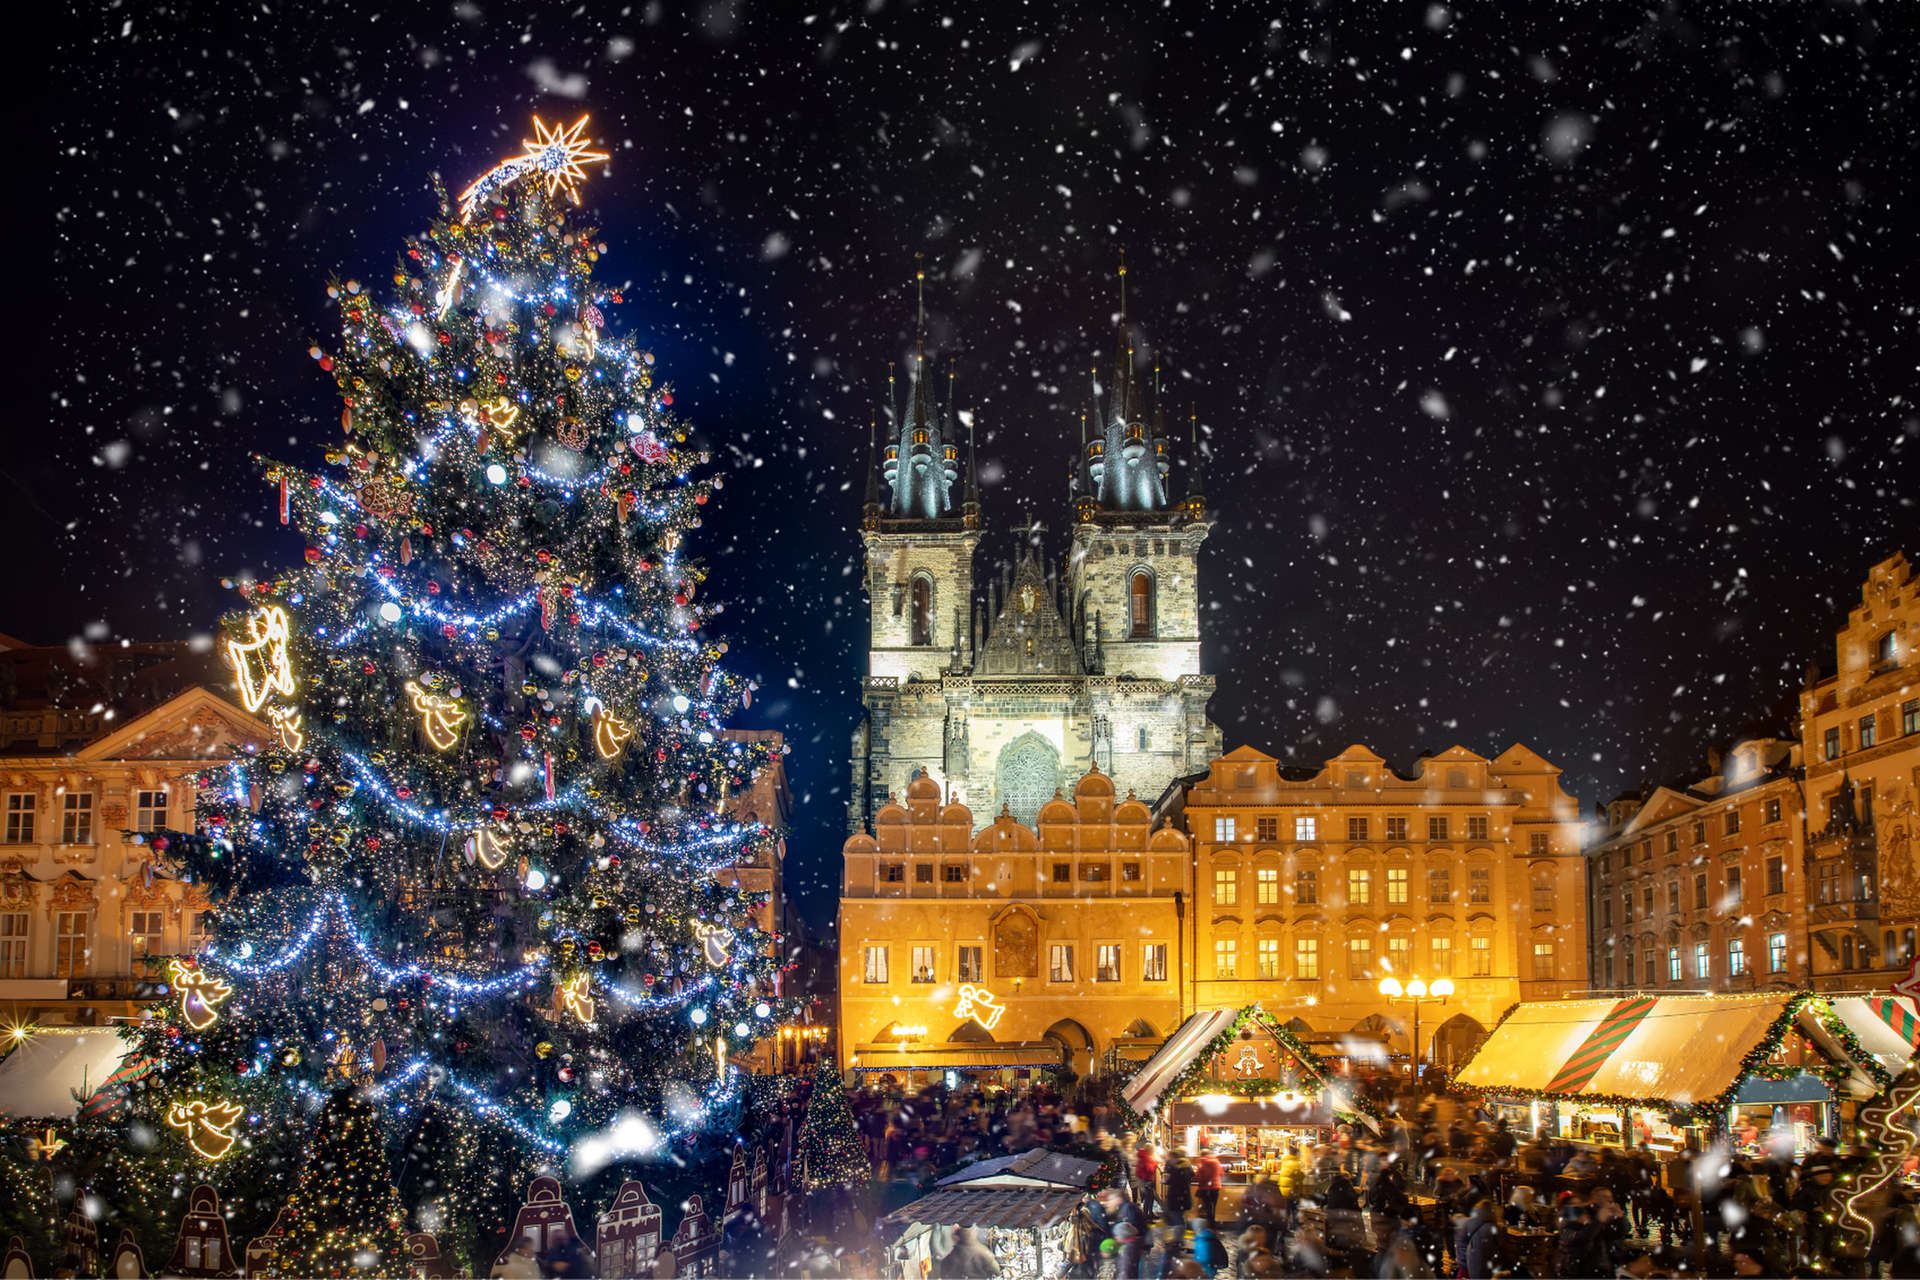 Prag ist zur Weihnachtszeit ein überaus zauberhafter Ort